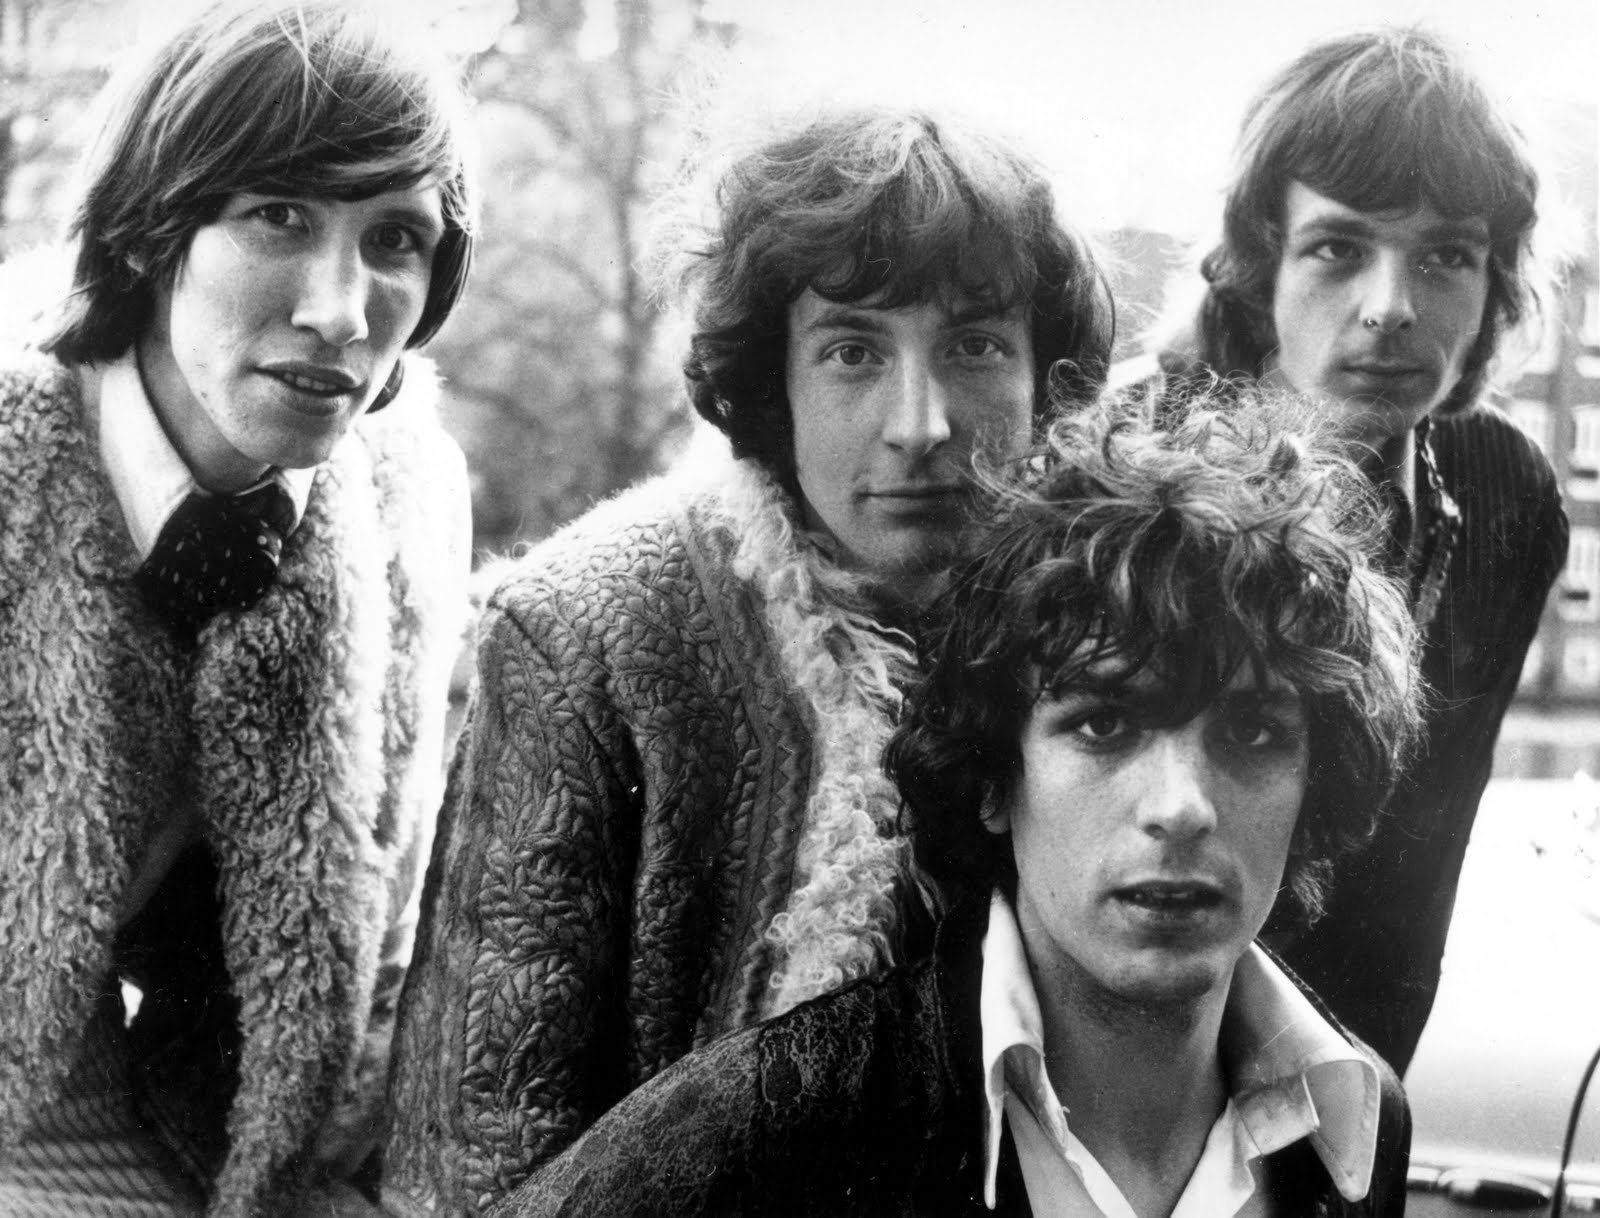 Torna la fiera del disco con l’omaggio a Syd Barrett e ai Pink Floyd